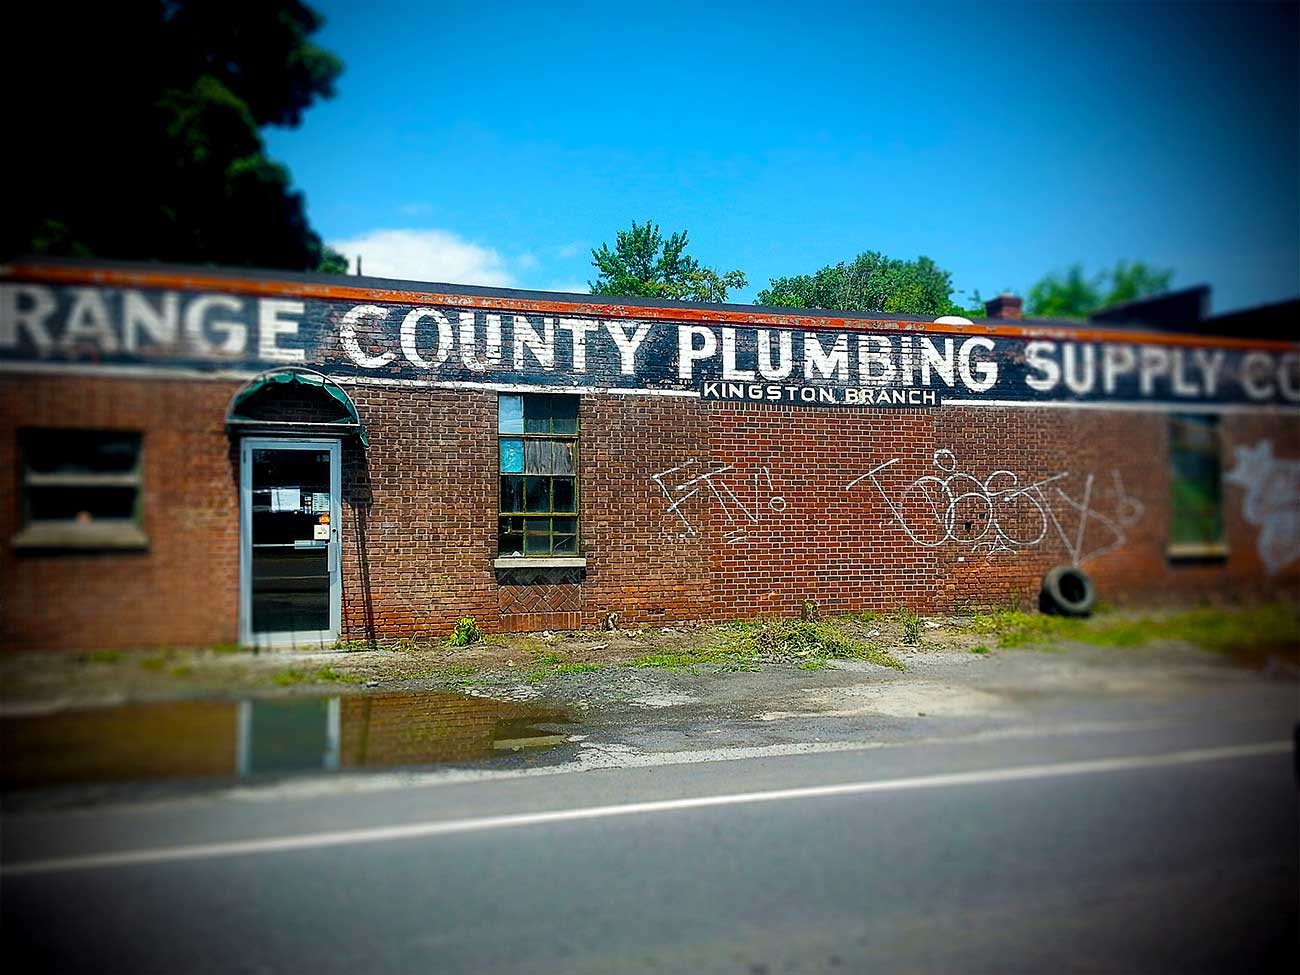 plumbing supply ©2015 bret wills